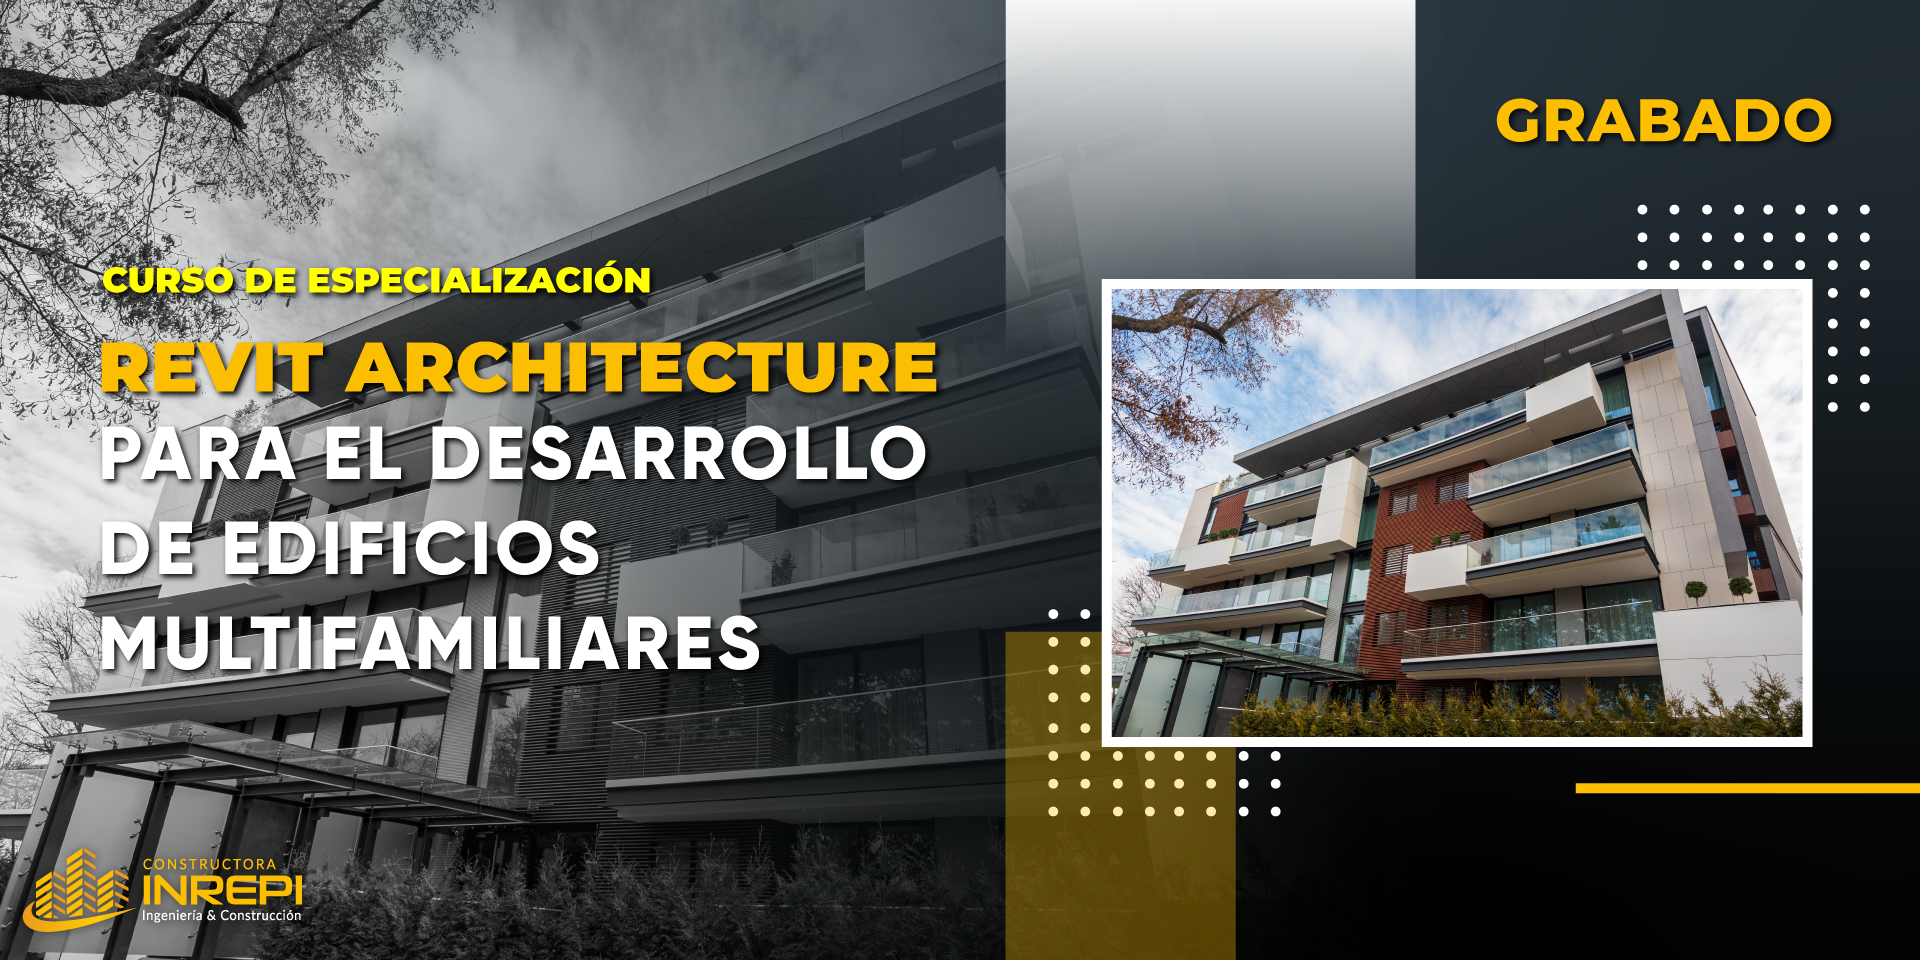 Revit Architecture Con Metodología Bim En El Desarrollo De Edificios Multifamiliares - Grabado